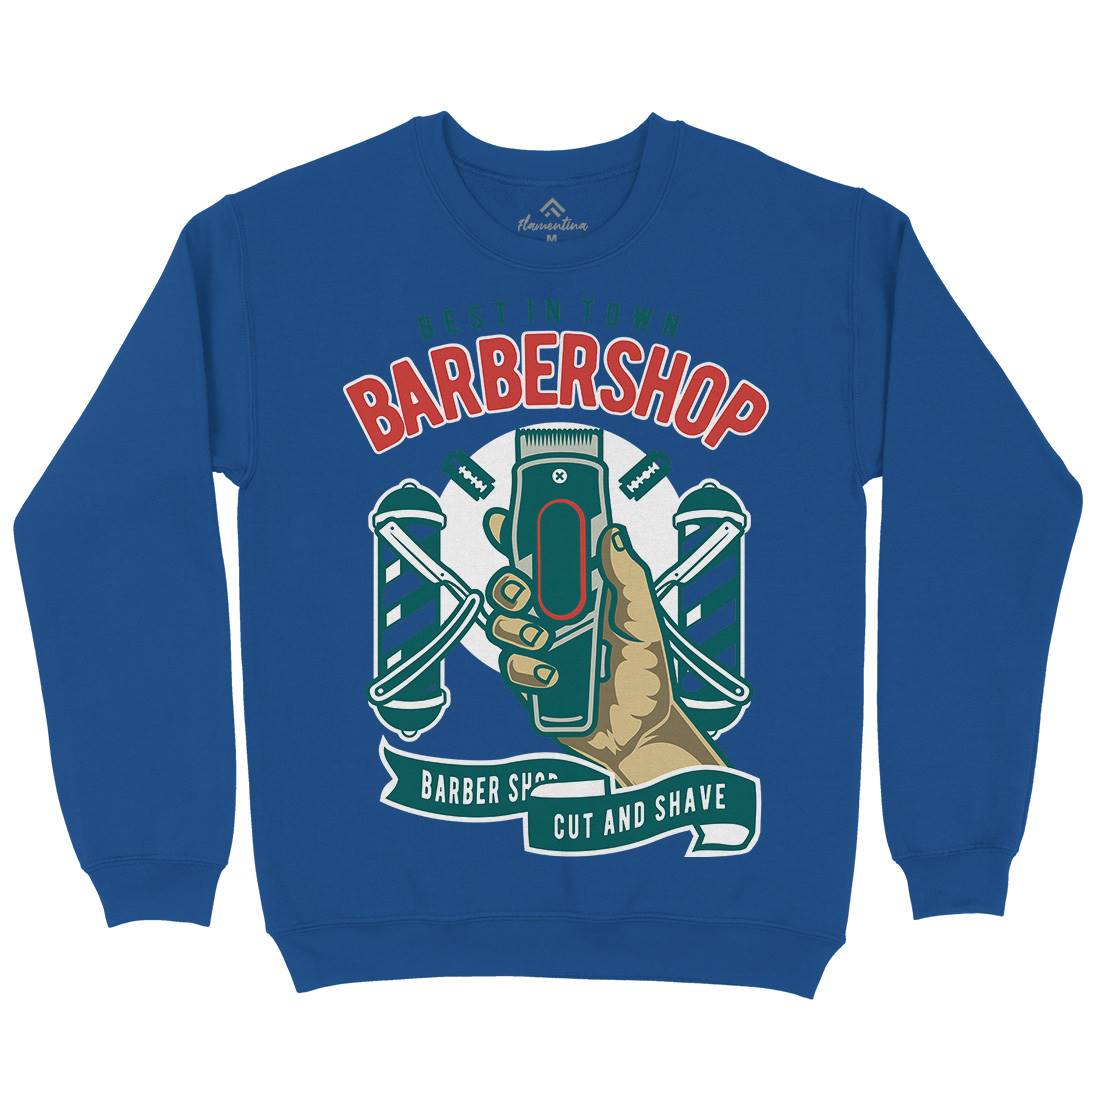 Barbershop Kids Crew Neck Sweatshirt Barber D506